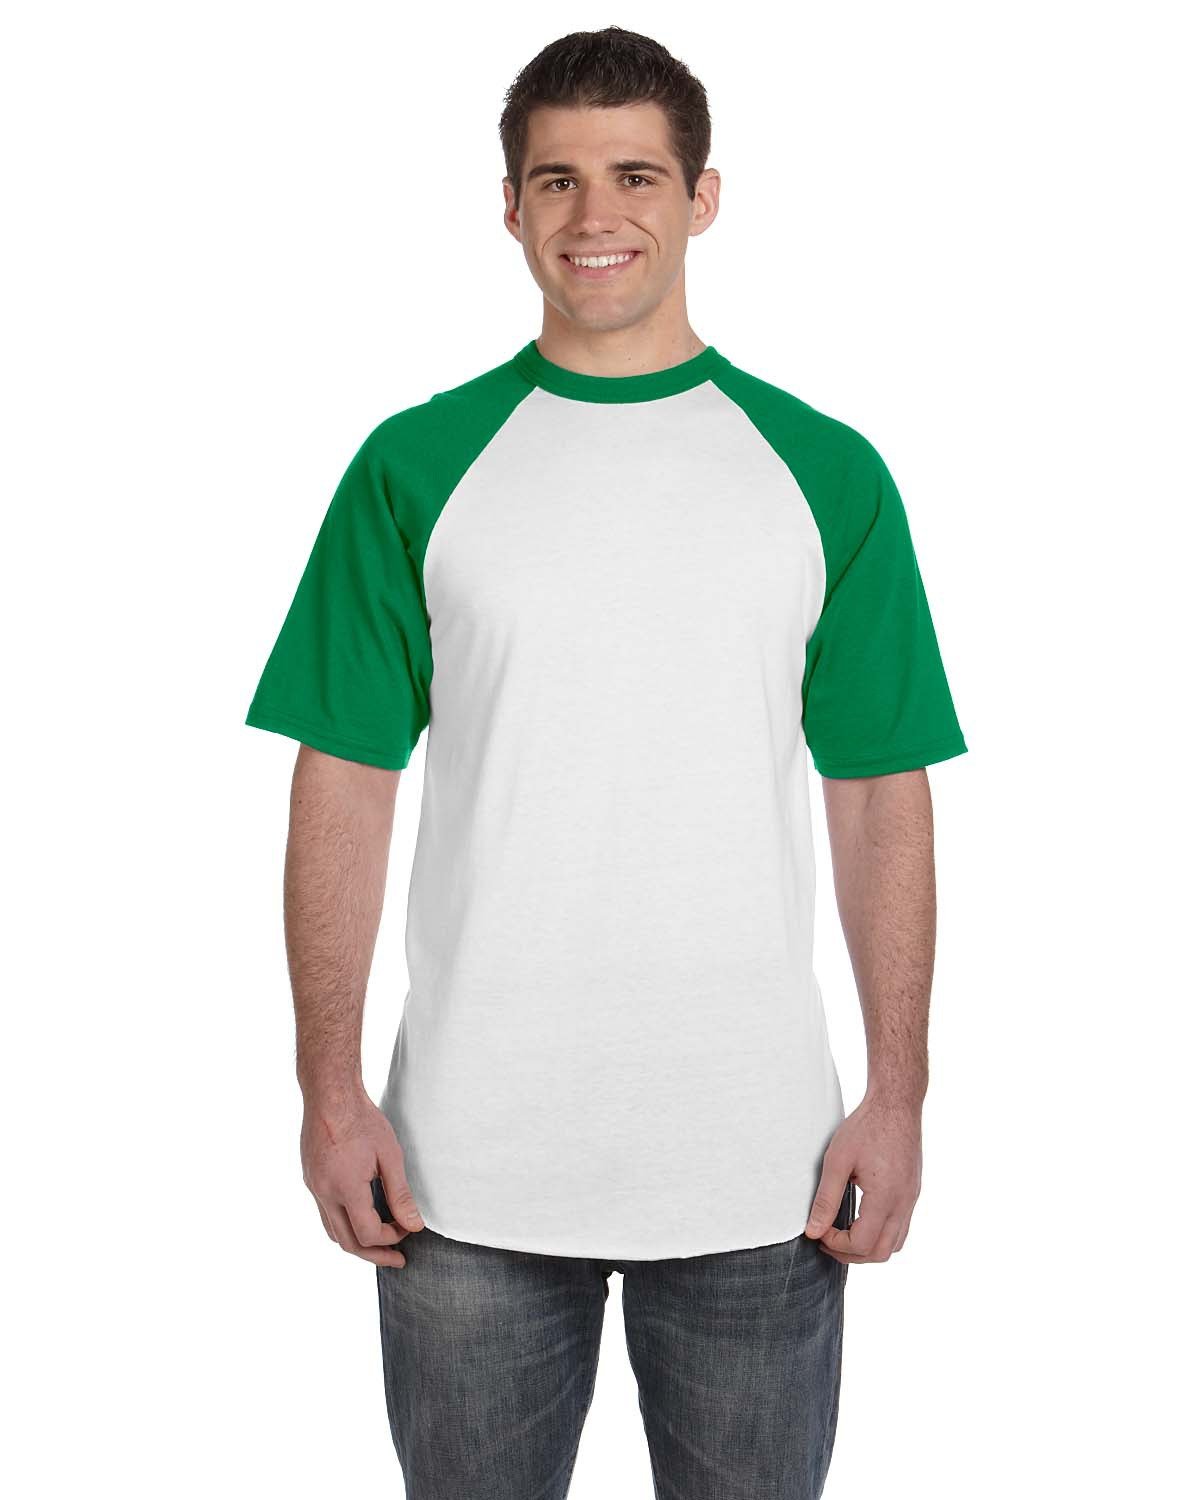 Augusta Sportswear Adult Short-Sleeve Baseball Jersey WHITE/ KELLY 